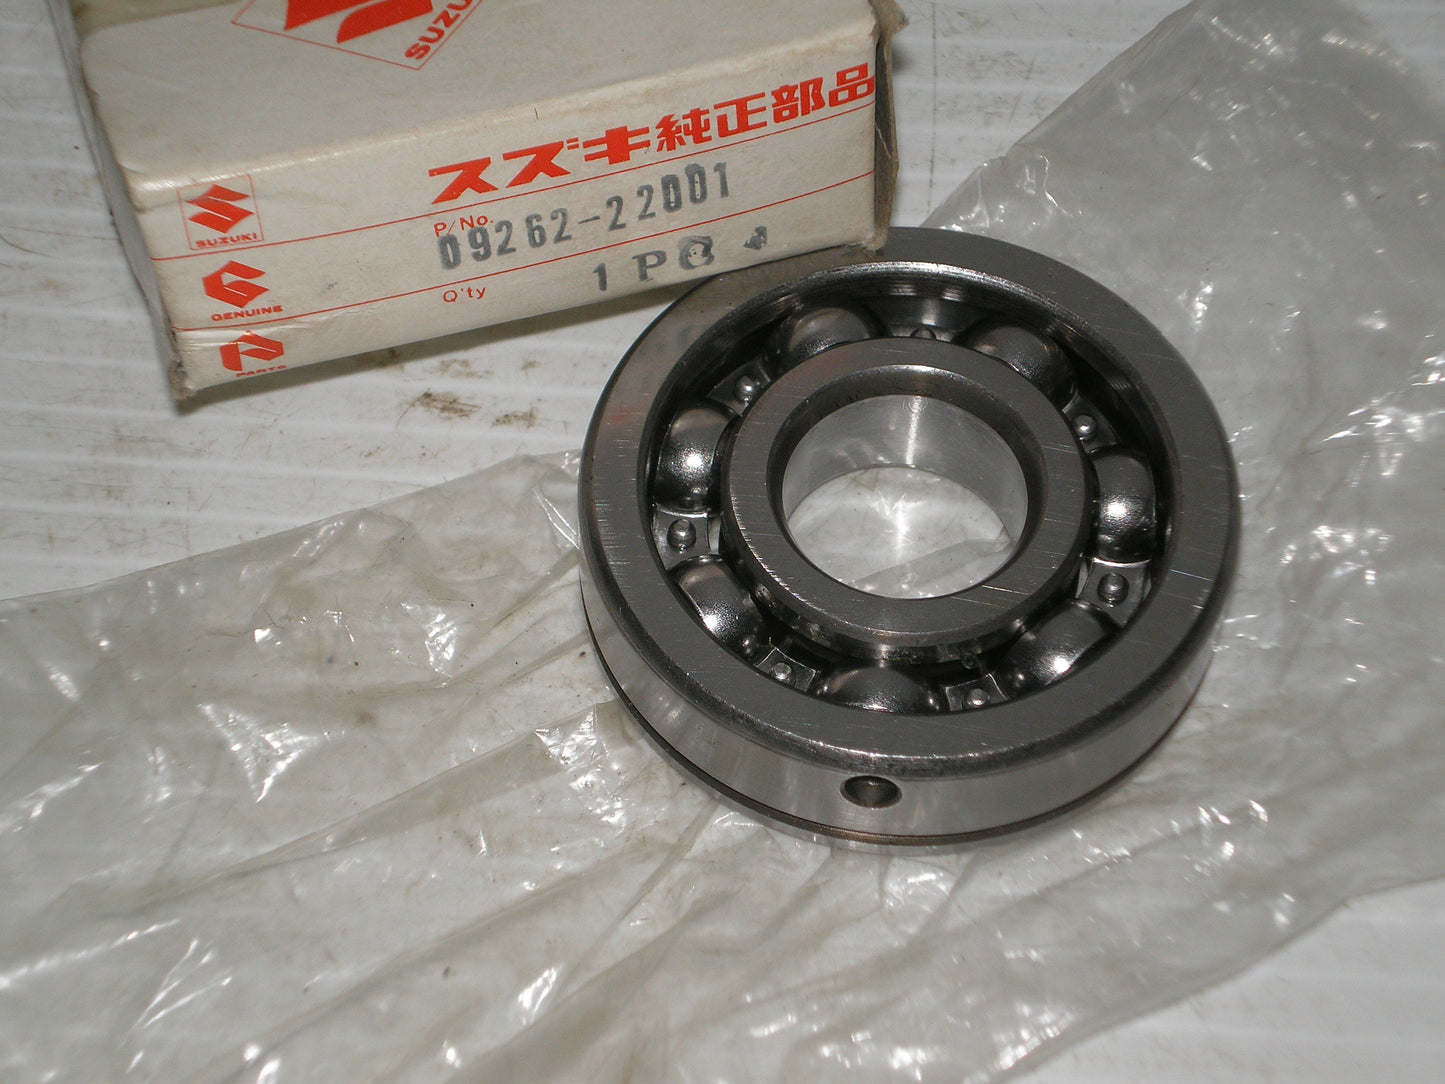 SUZUKI GT500 T500 Transmission Drive Shaft Bearing 09262-22001